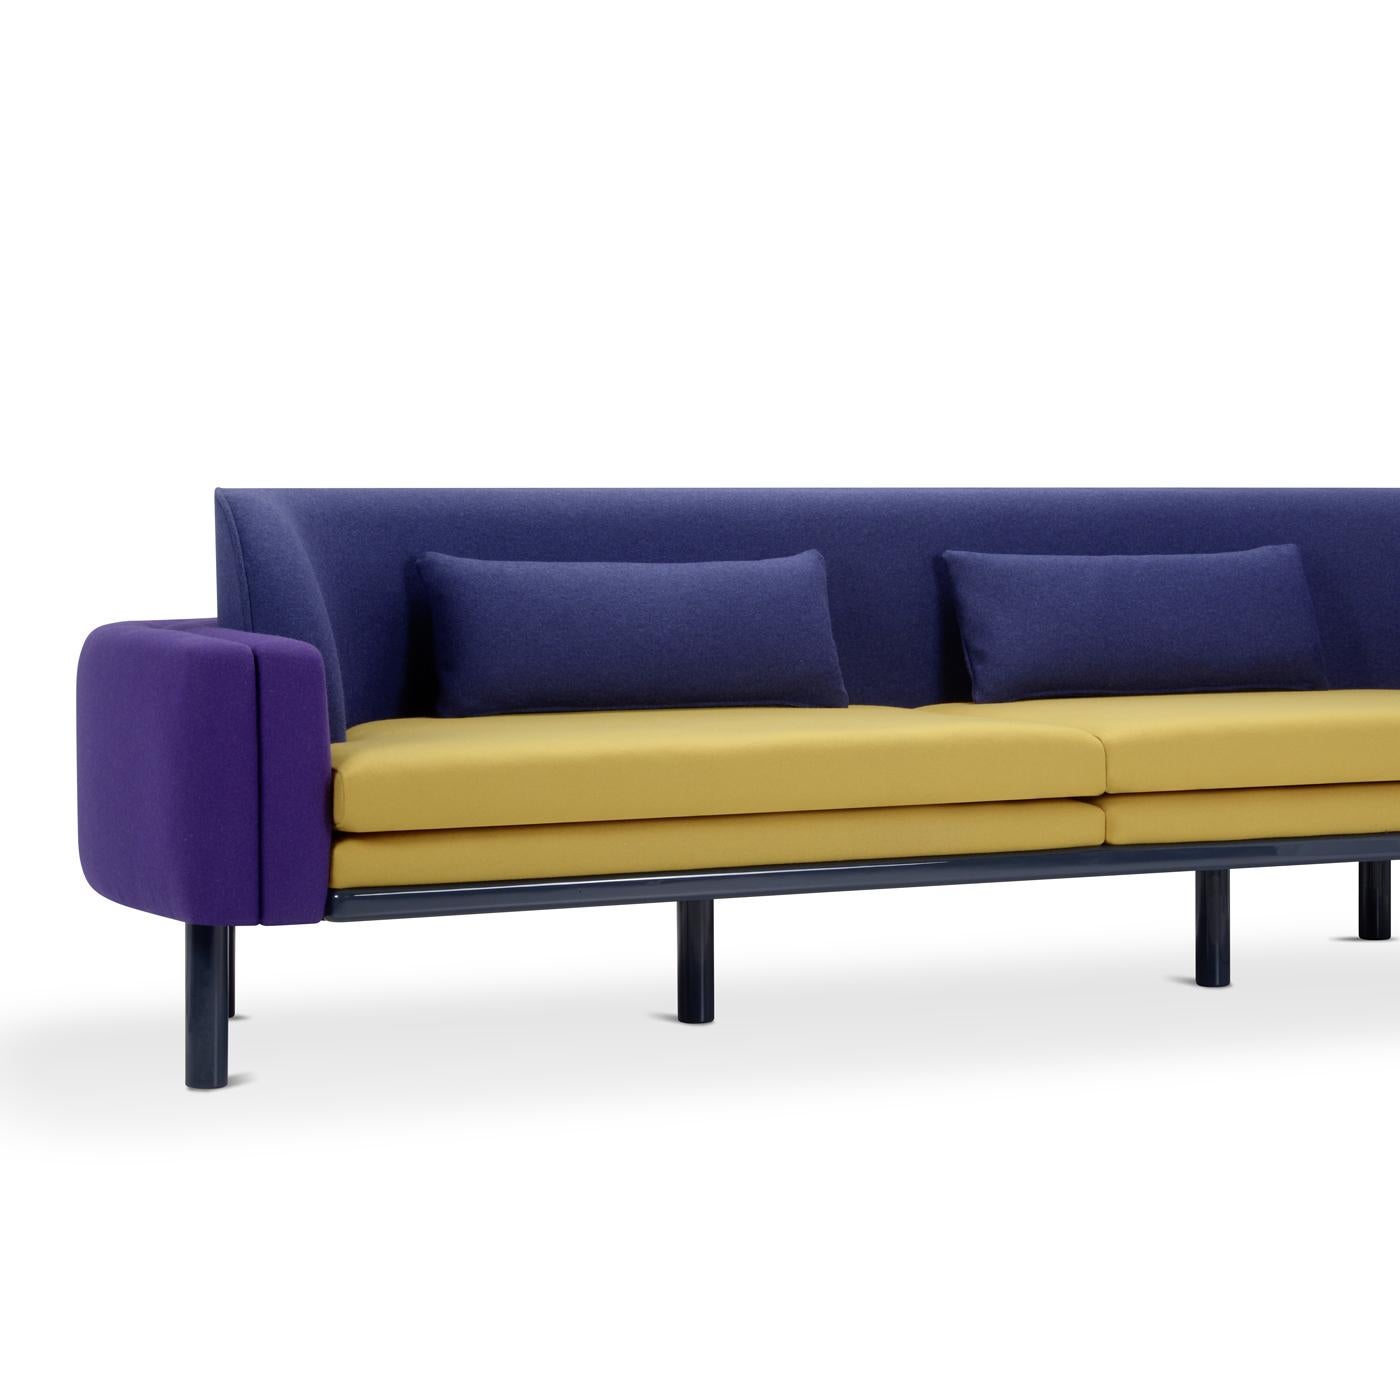 Das Quecksilber-Sofa ist von der künstlerischen Avantgarde der frühen 1900er Jahre inspiriert und besticht durch seine optische Wirkung. Das Gestell aus lackiertem Buchenholz passt zu dem gepolsterten Sitz, der Rückenlehne und den Armlehnen. Die